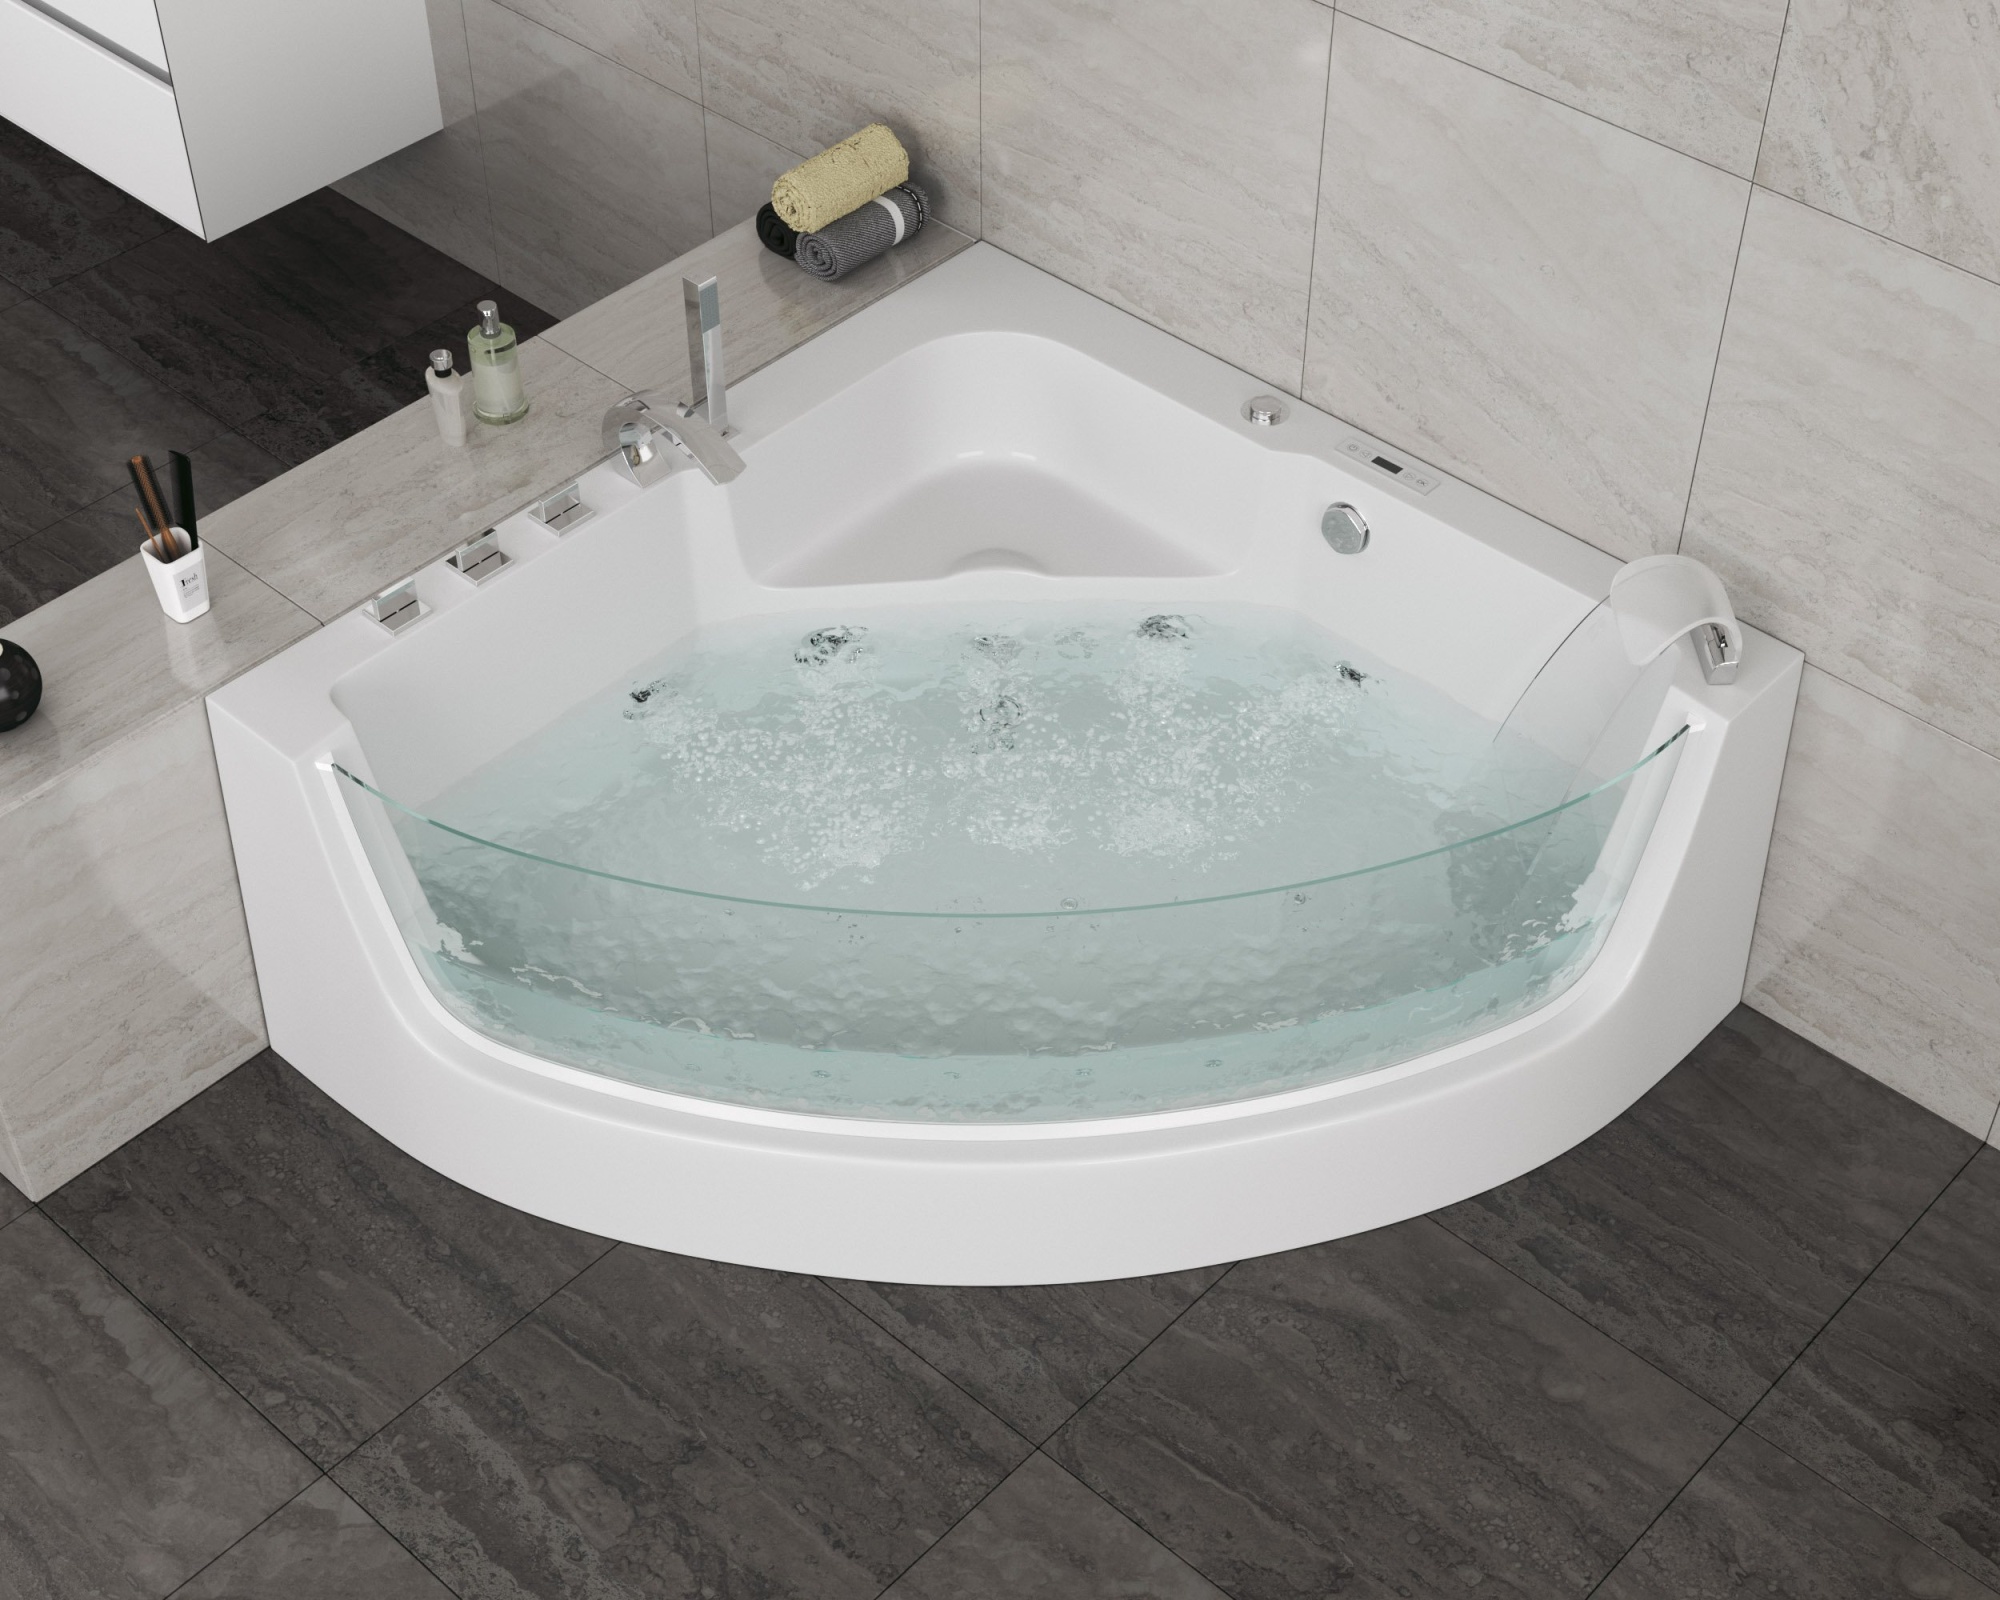 Акриловая ванна Grossman GR-15000 150x150